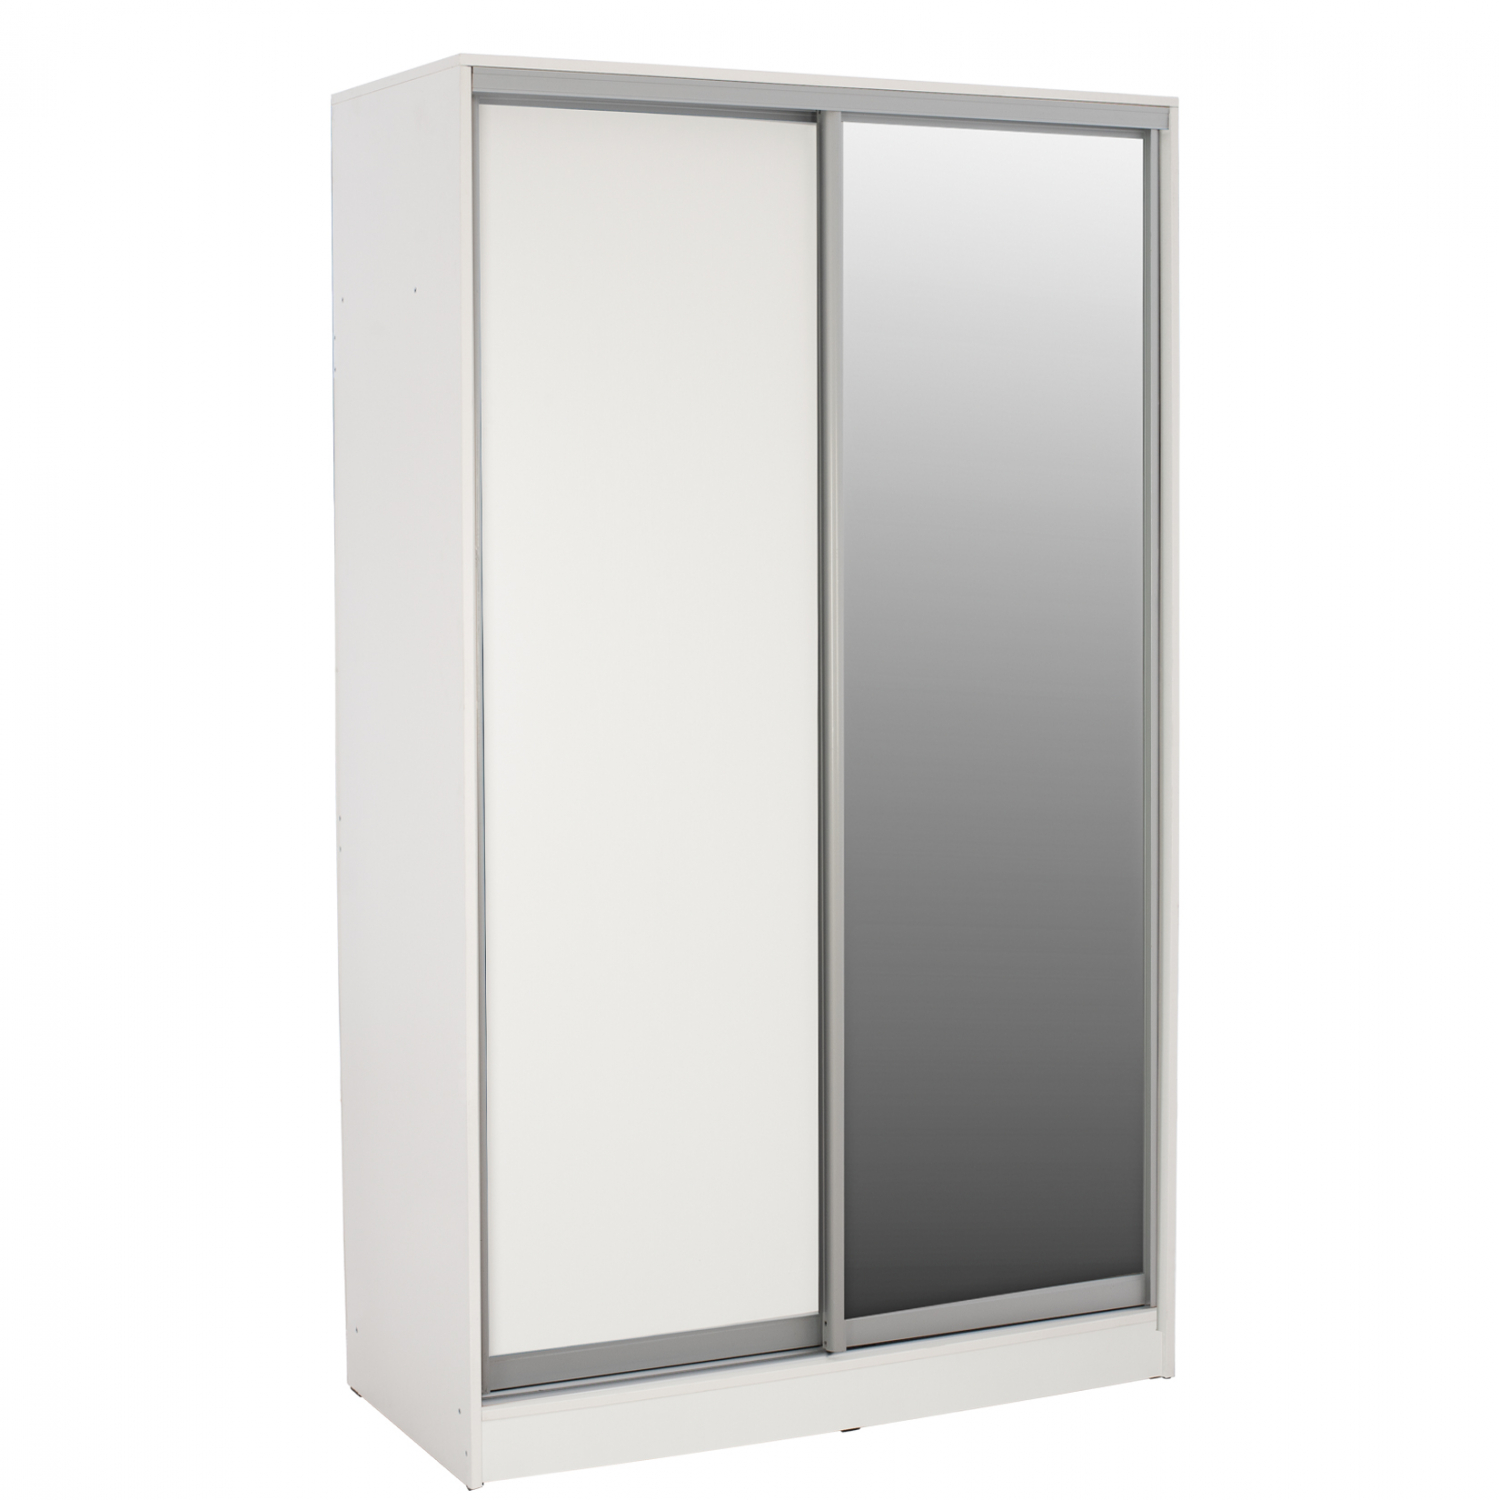 Ντουλάπα δίφυλλη συρόμενη με καθρέφτη σε άσπρο χρώμα 120x60x220